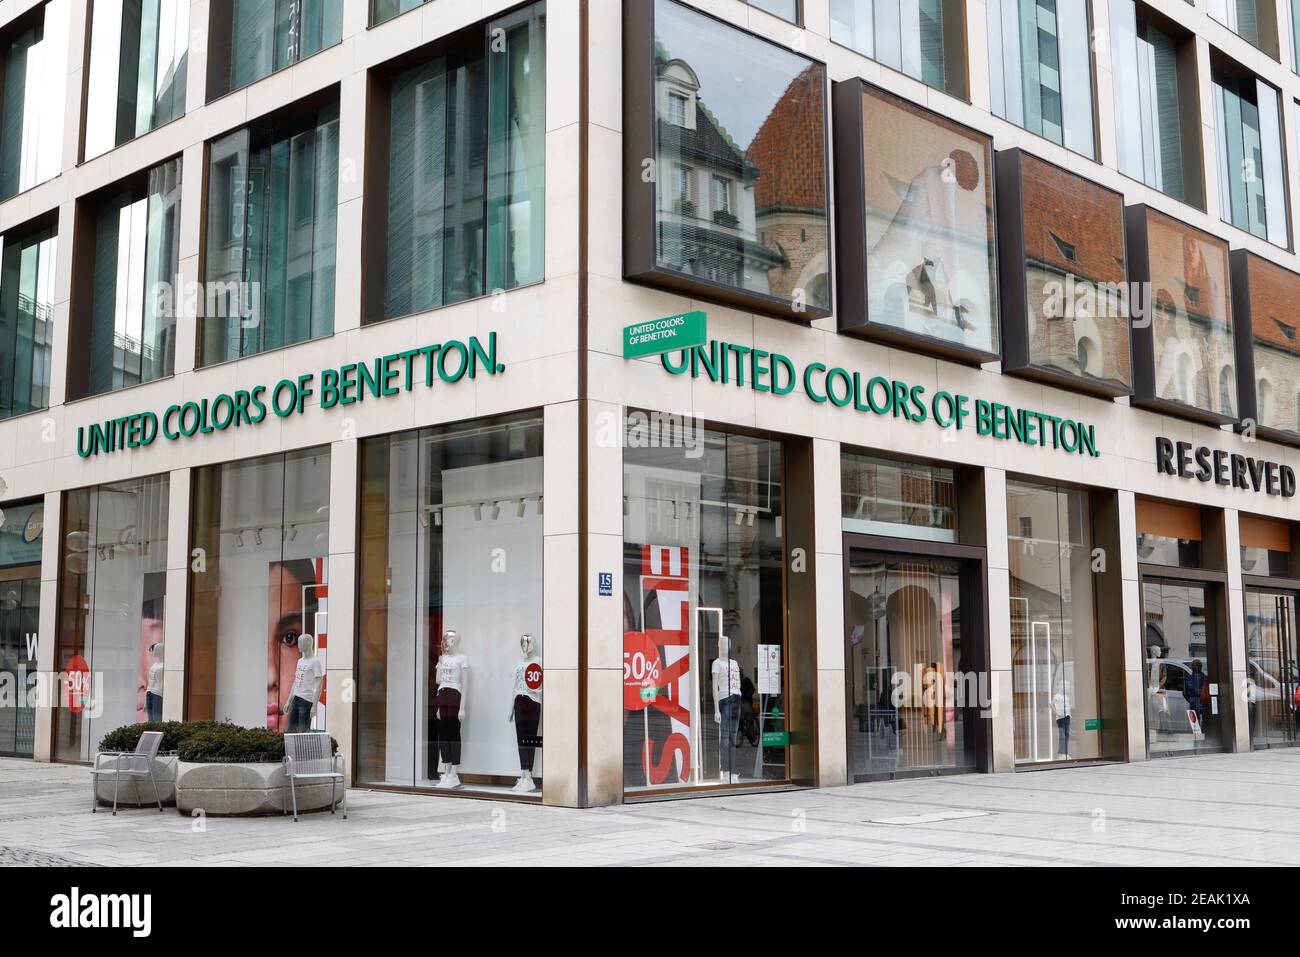 La tienda 'United Colors of Benetton' se ve cerrada debido a la pandemia de  la enfermedad coronavirus (COVID-19) en Munich, Alemania, 5 de febrero de  2021. Foto tomada el 5 de febrero